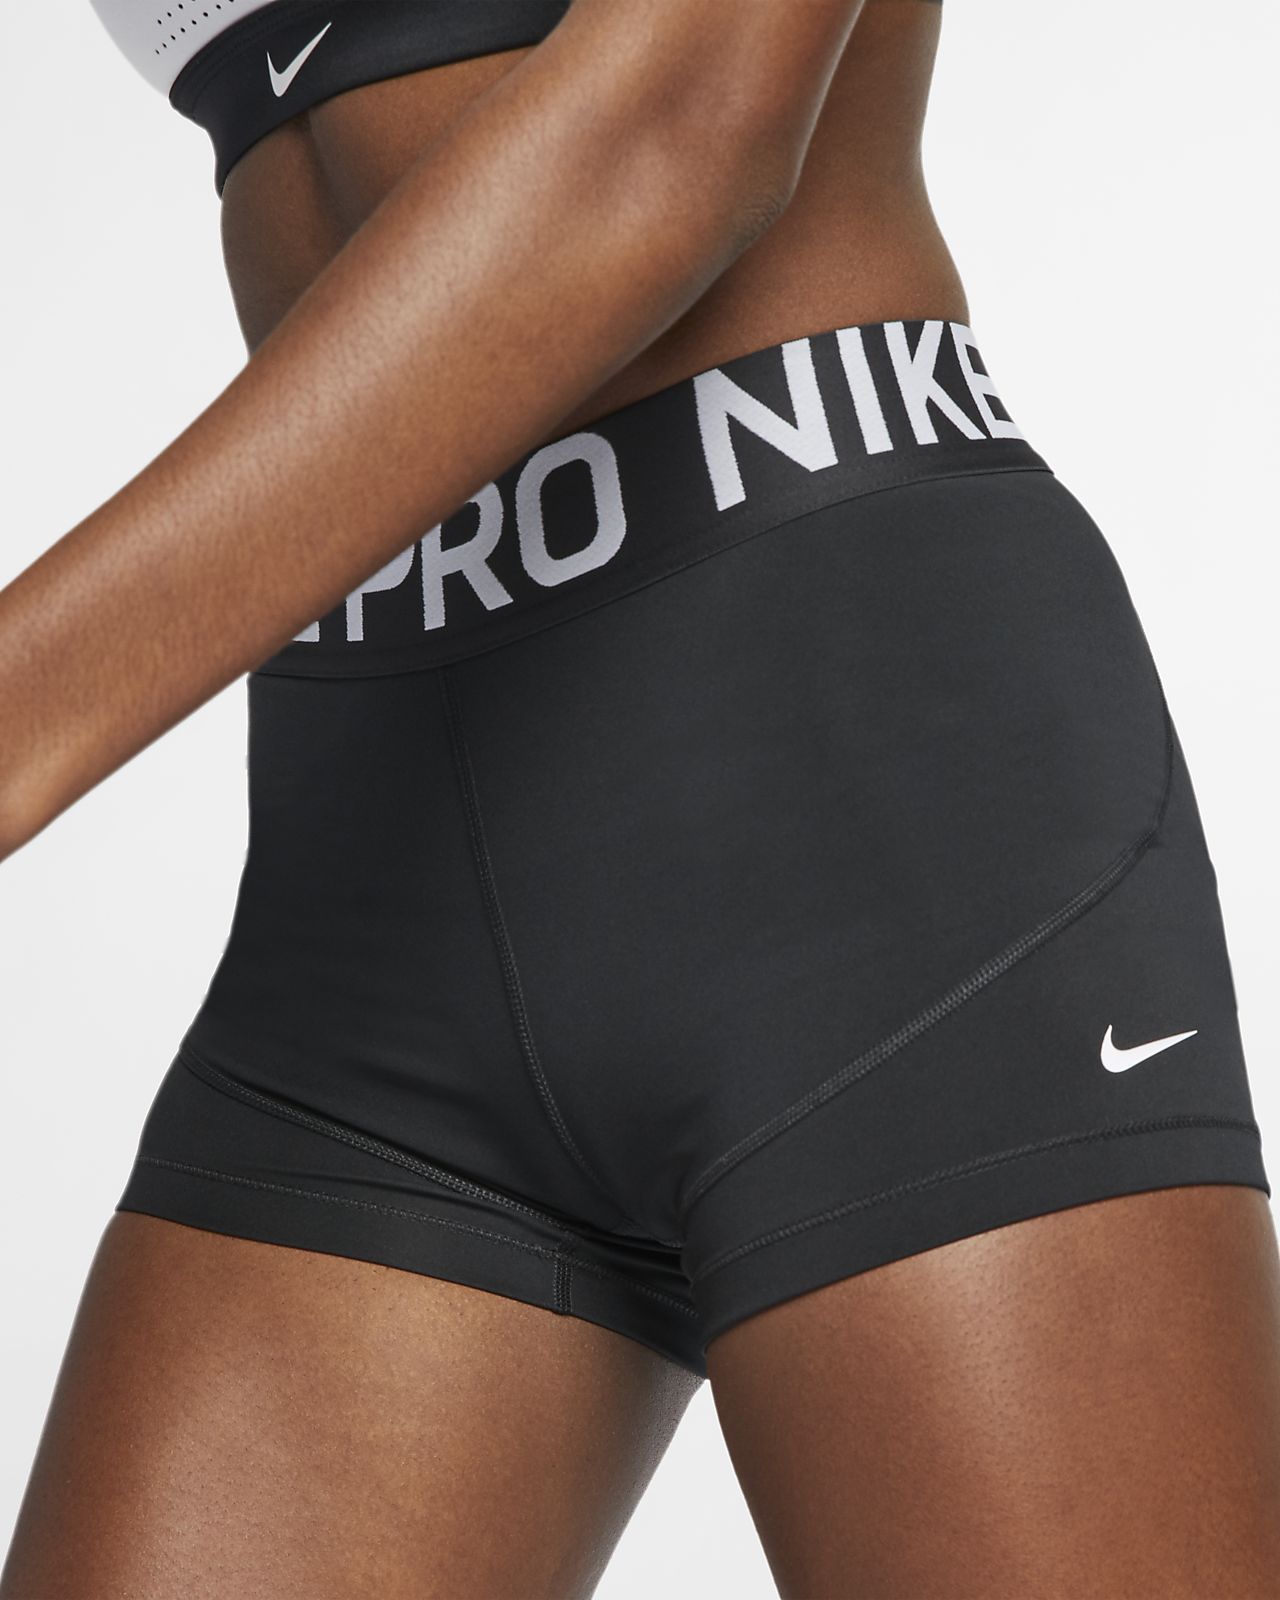 Nike Pro | Nike (US)